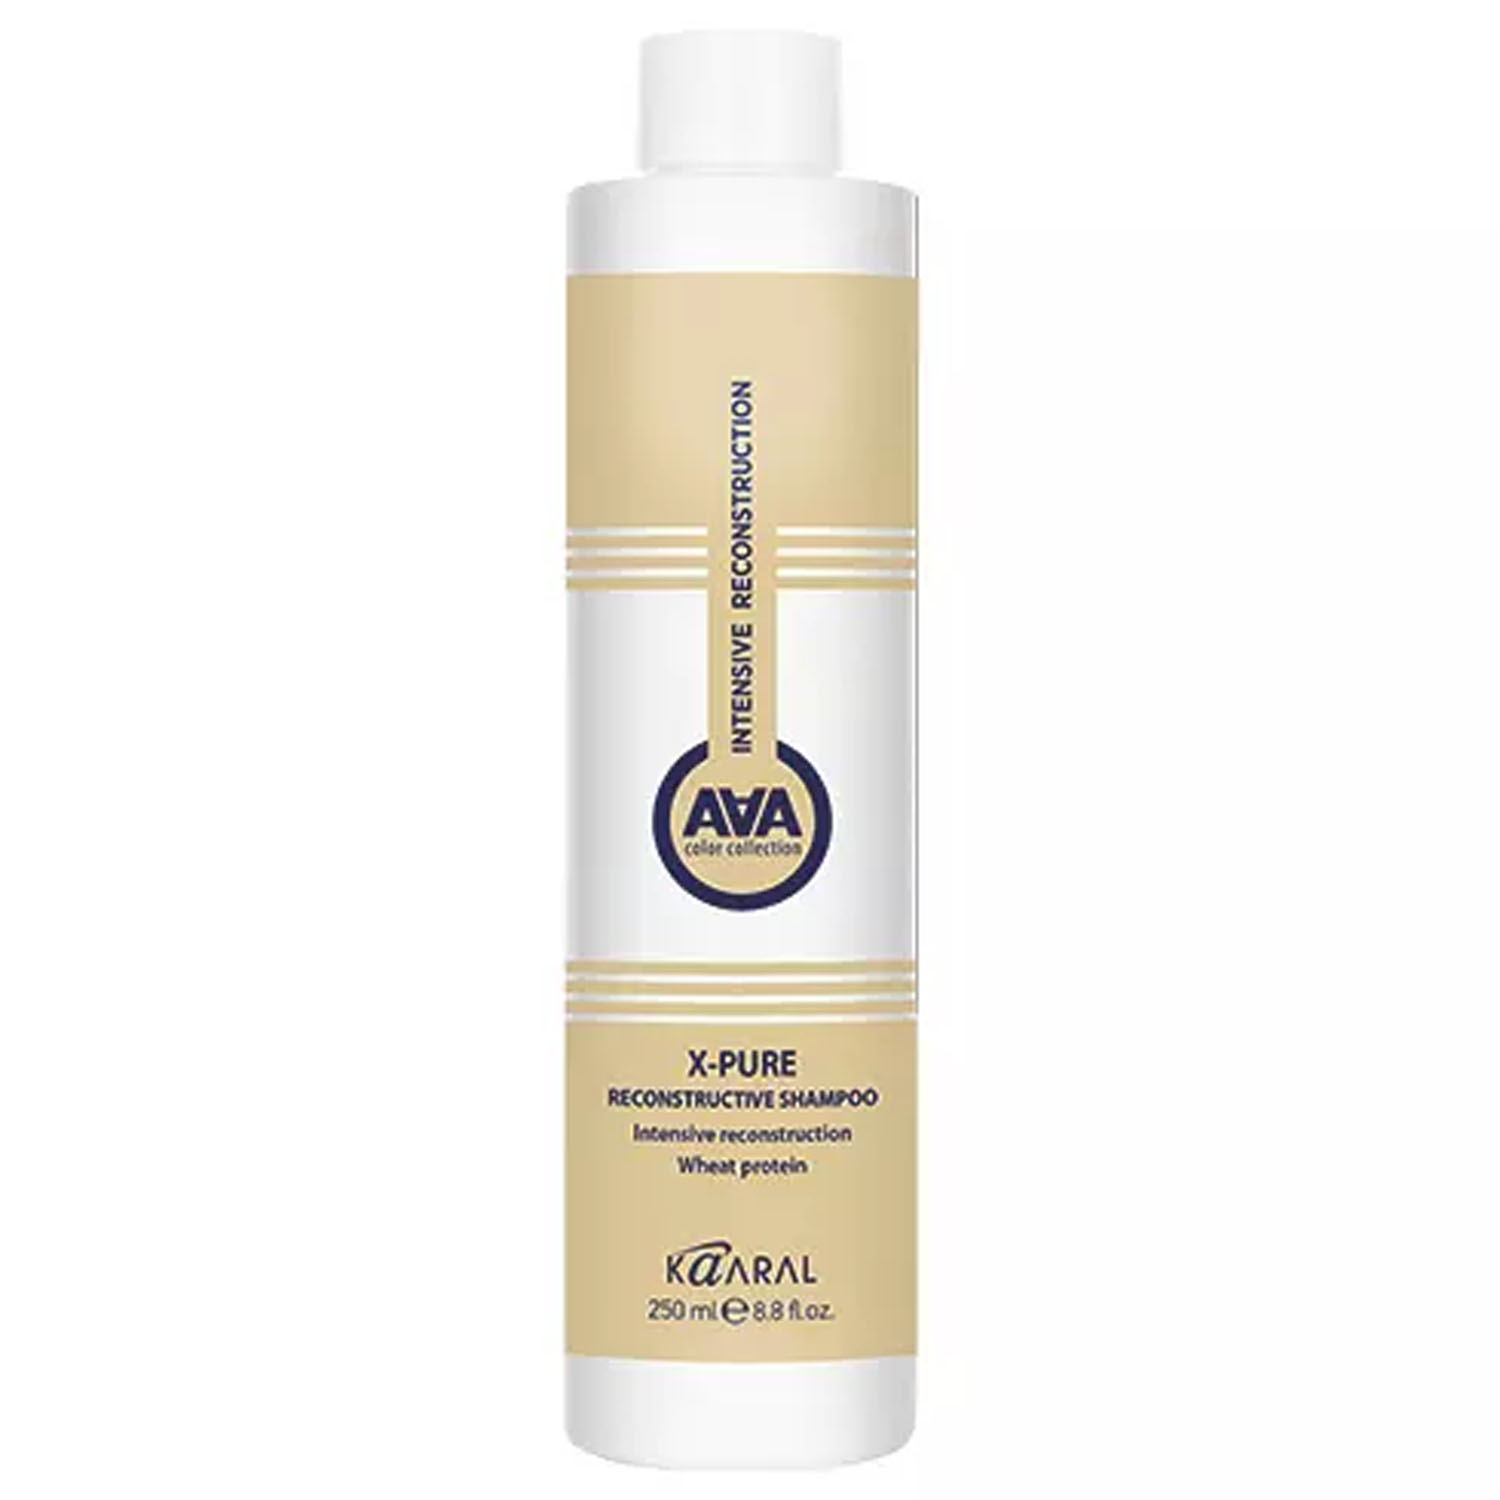 картинка Восстанавливающий шампунь для поврежденных волос с пшеничными протеинами X-Pure Reconstructive Shampoo, 250 мл от официального интернет-магазина Каарал